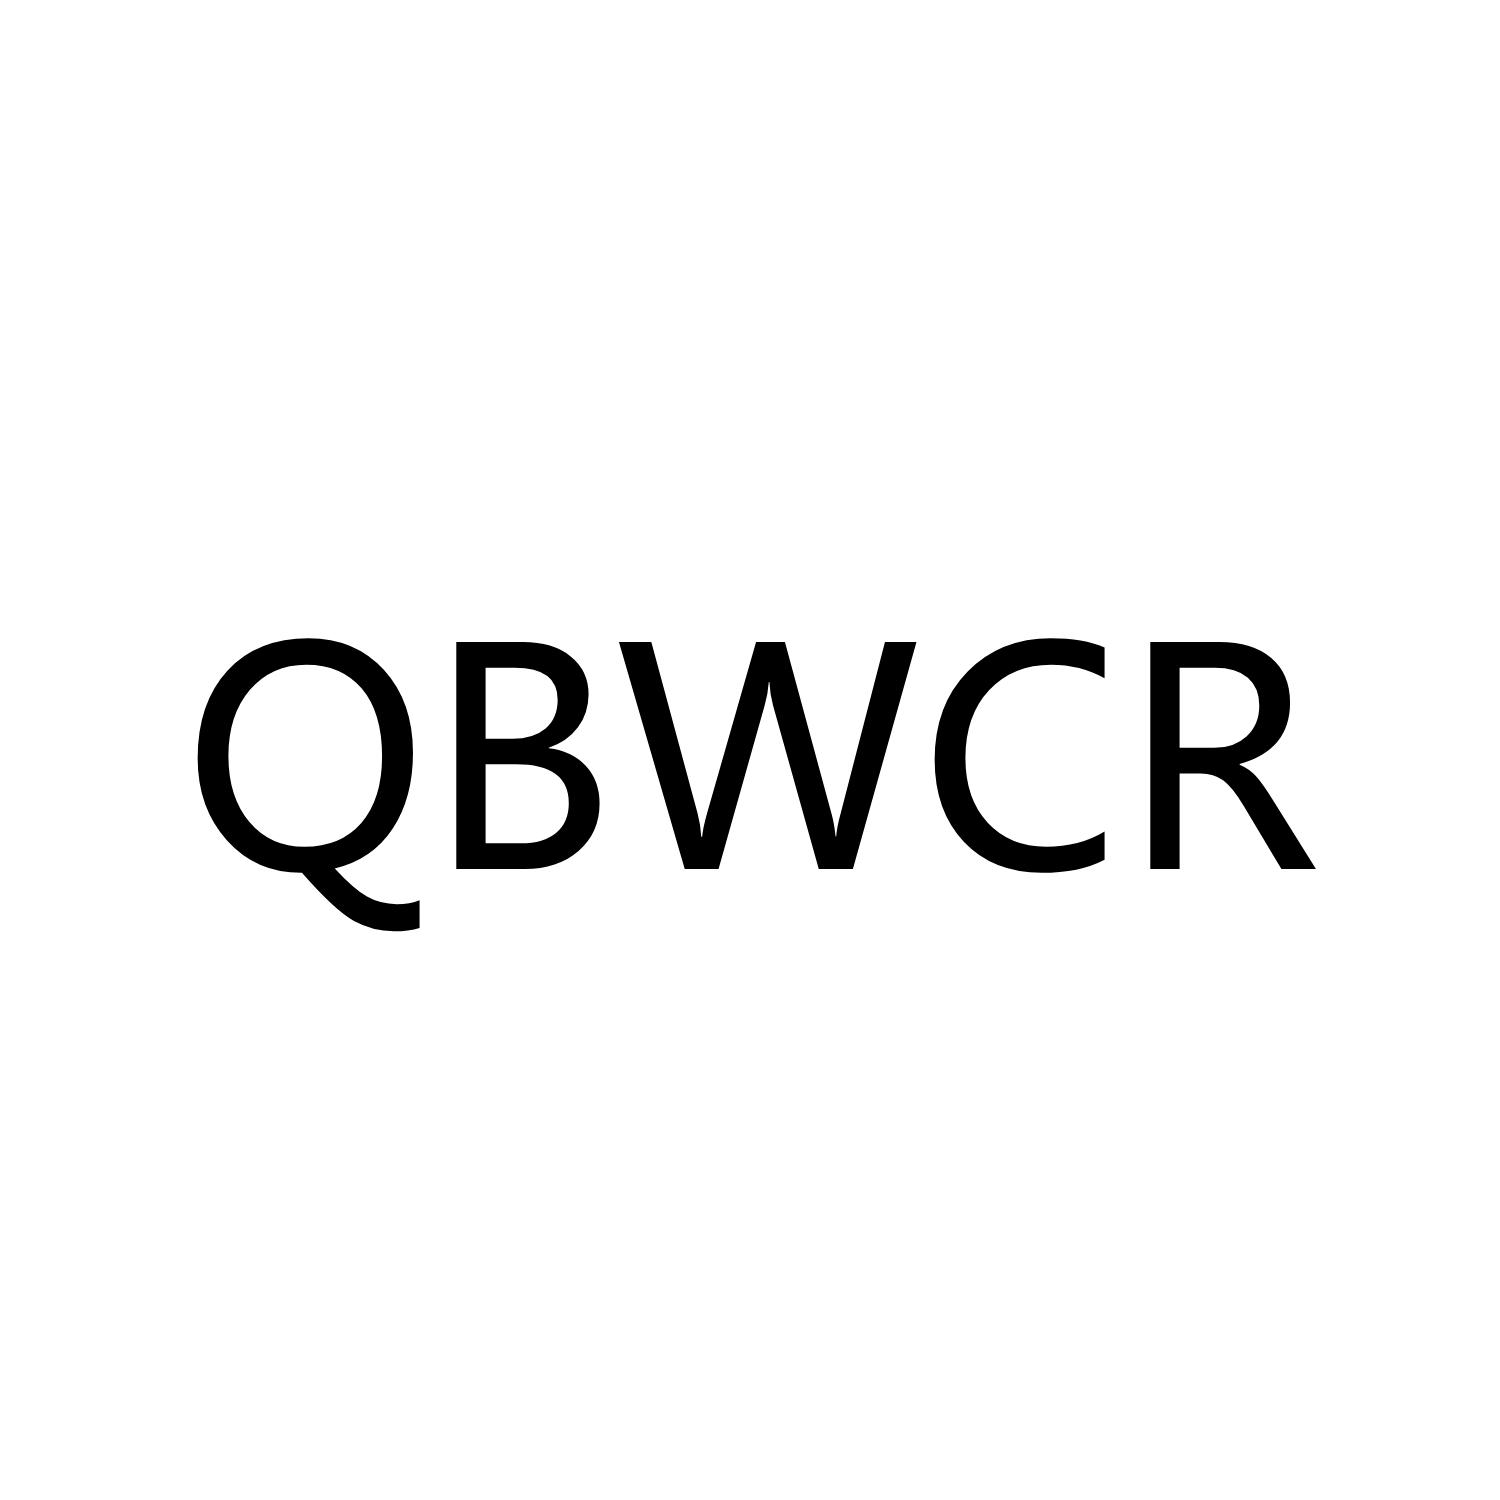 QBWCR